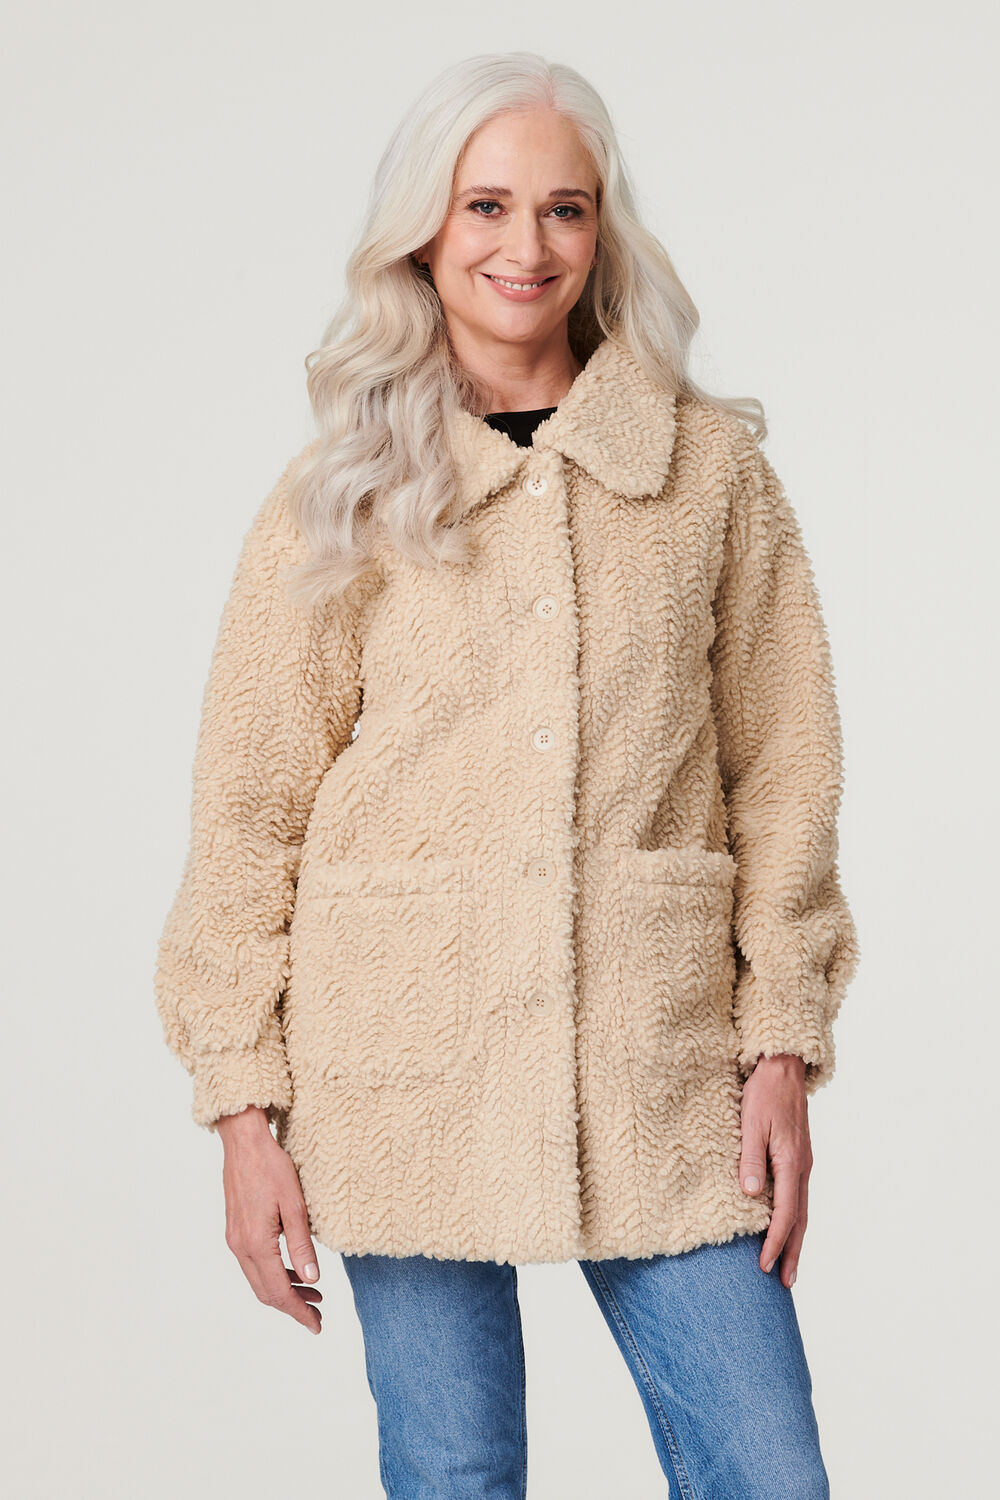 Izabel London Women’s Beige Textured Faux Fur Teddy Coat, Size: 18